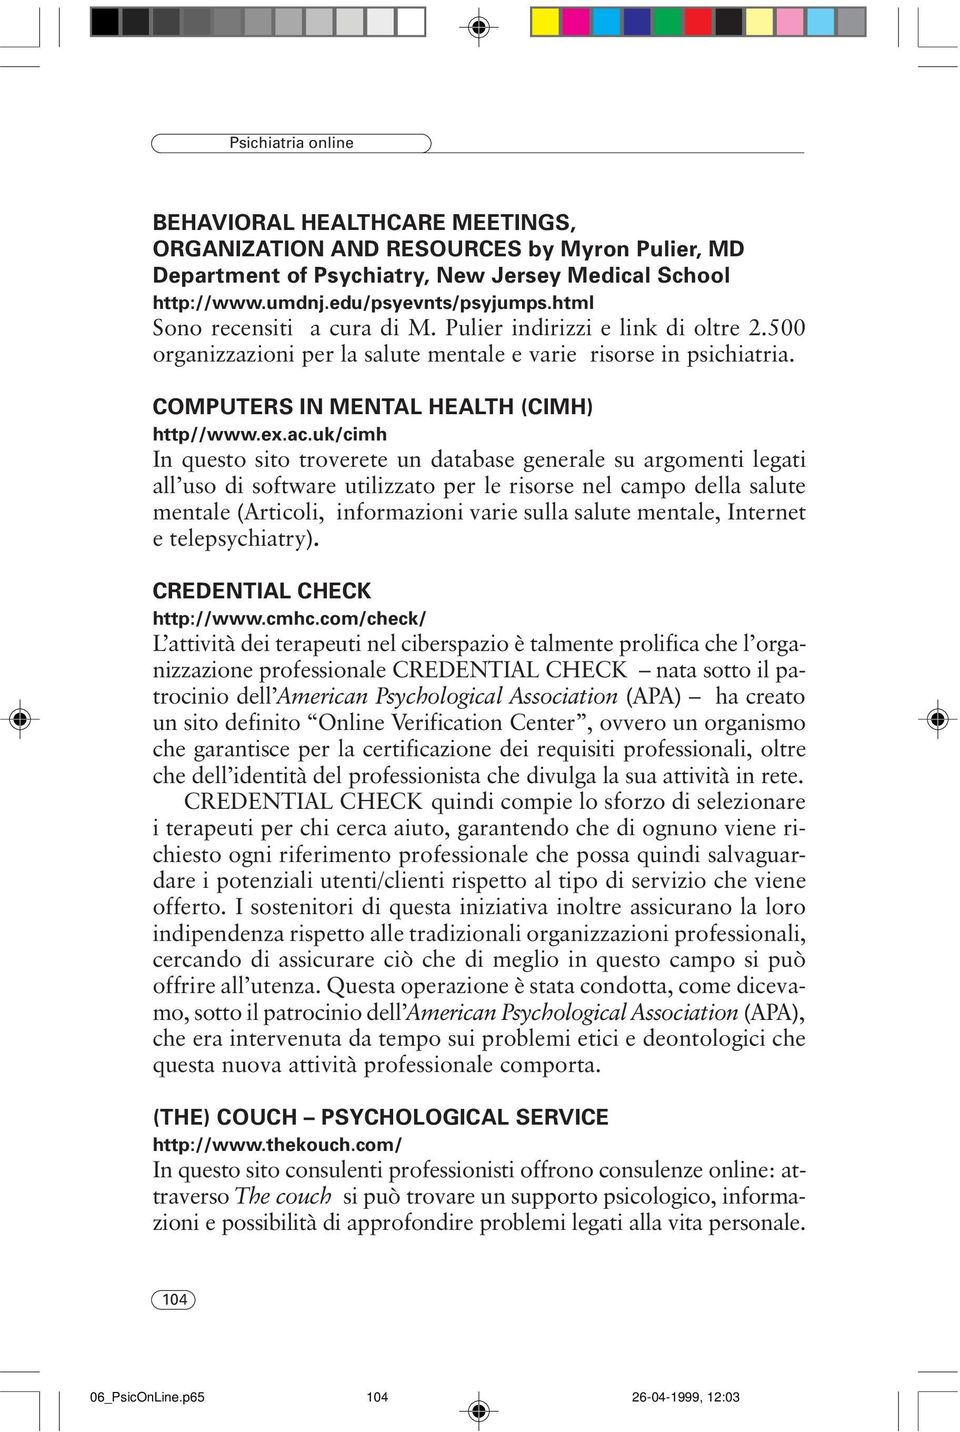 uk/cimh In questo sito troverete un database generale su argomenti legati all uso di software utilizzato per le risorse nel campo della salute mentale (Articoli, informazioni varie sulla salute